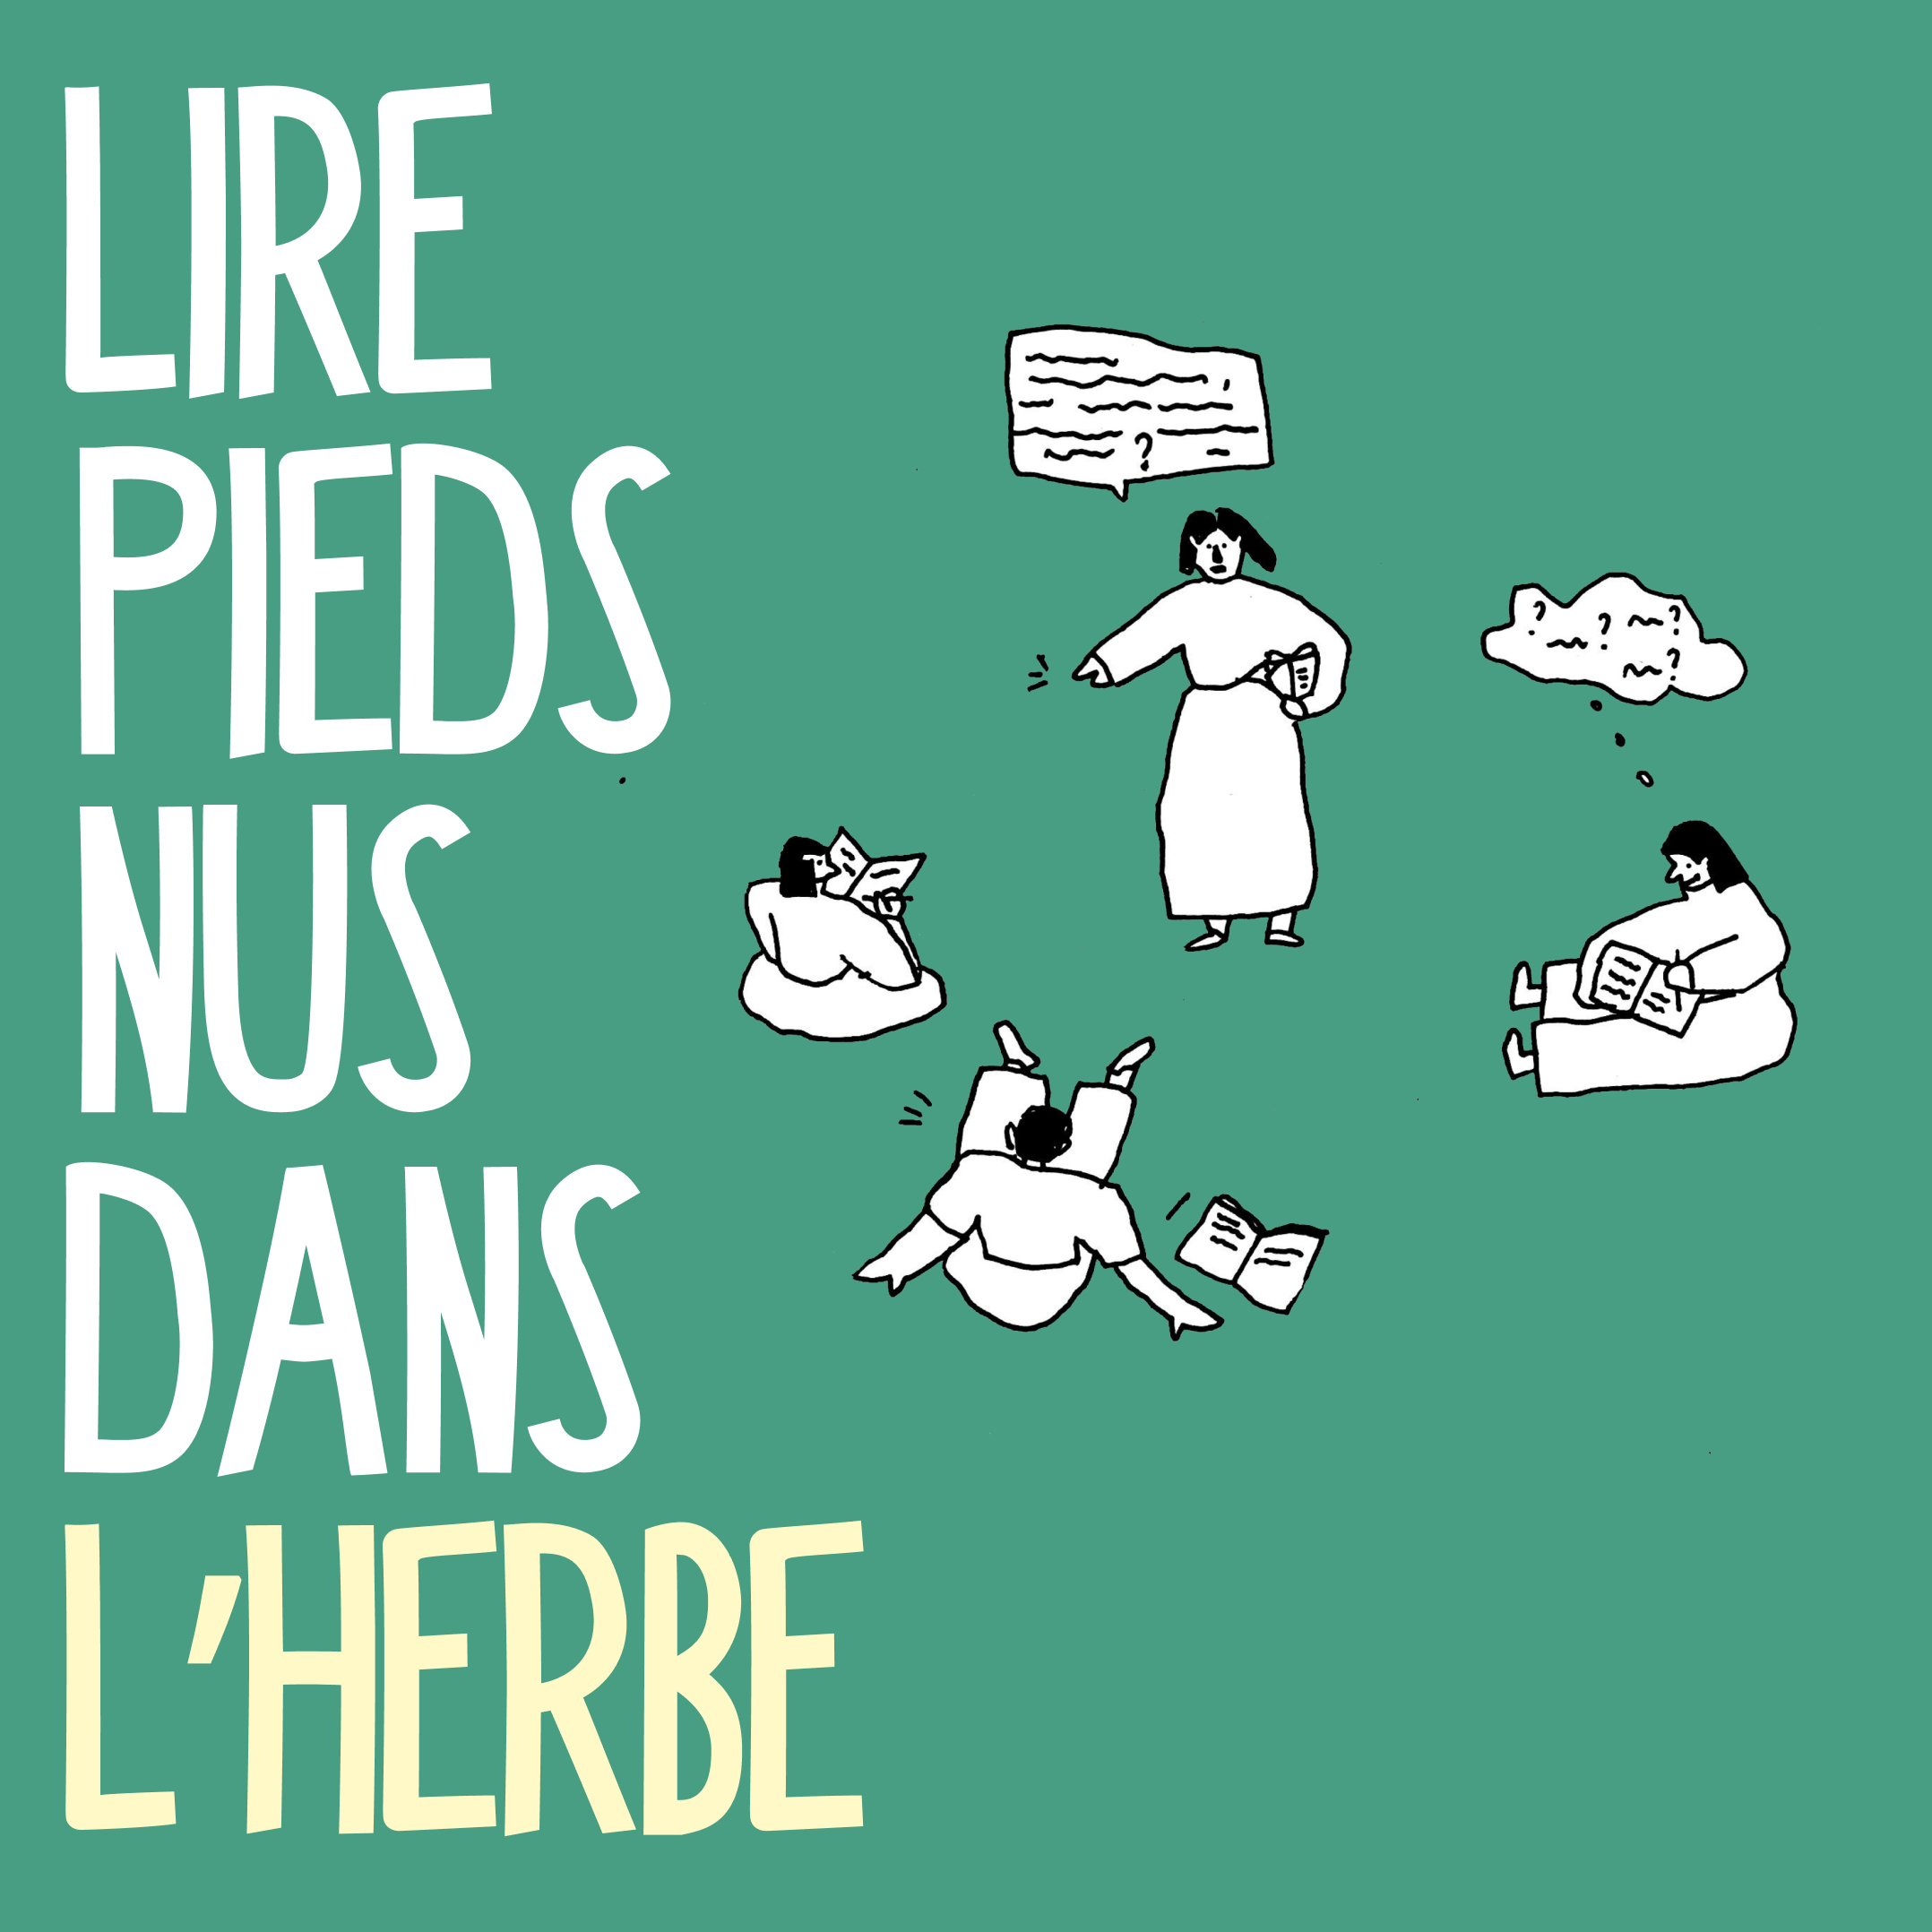 image Lire_pieds_nus_dans_lherbe.png (0.4MB)